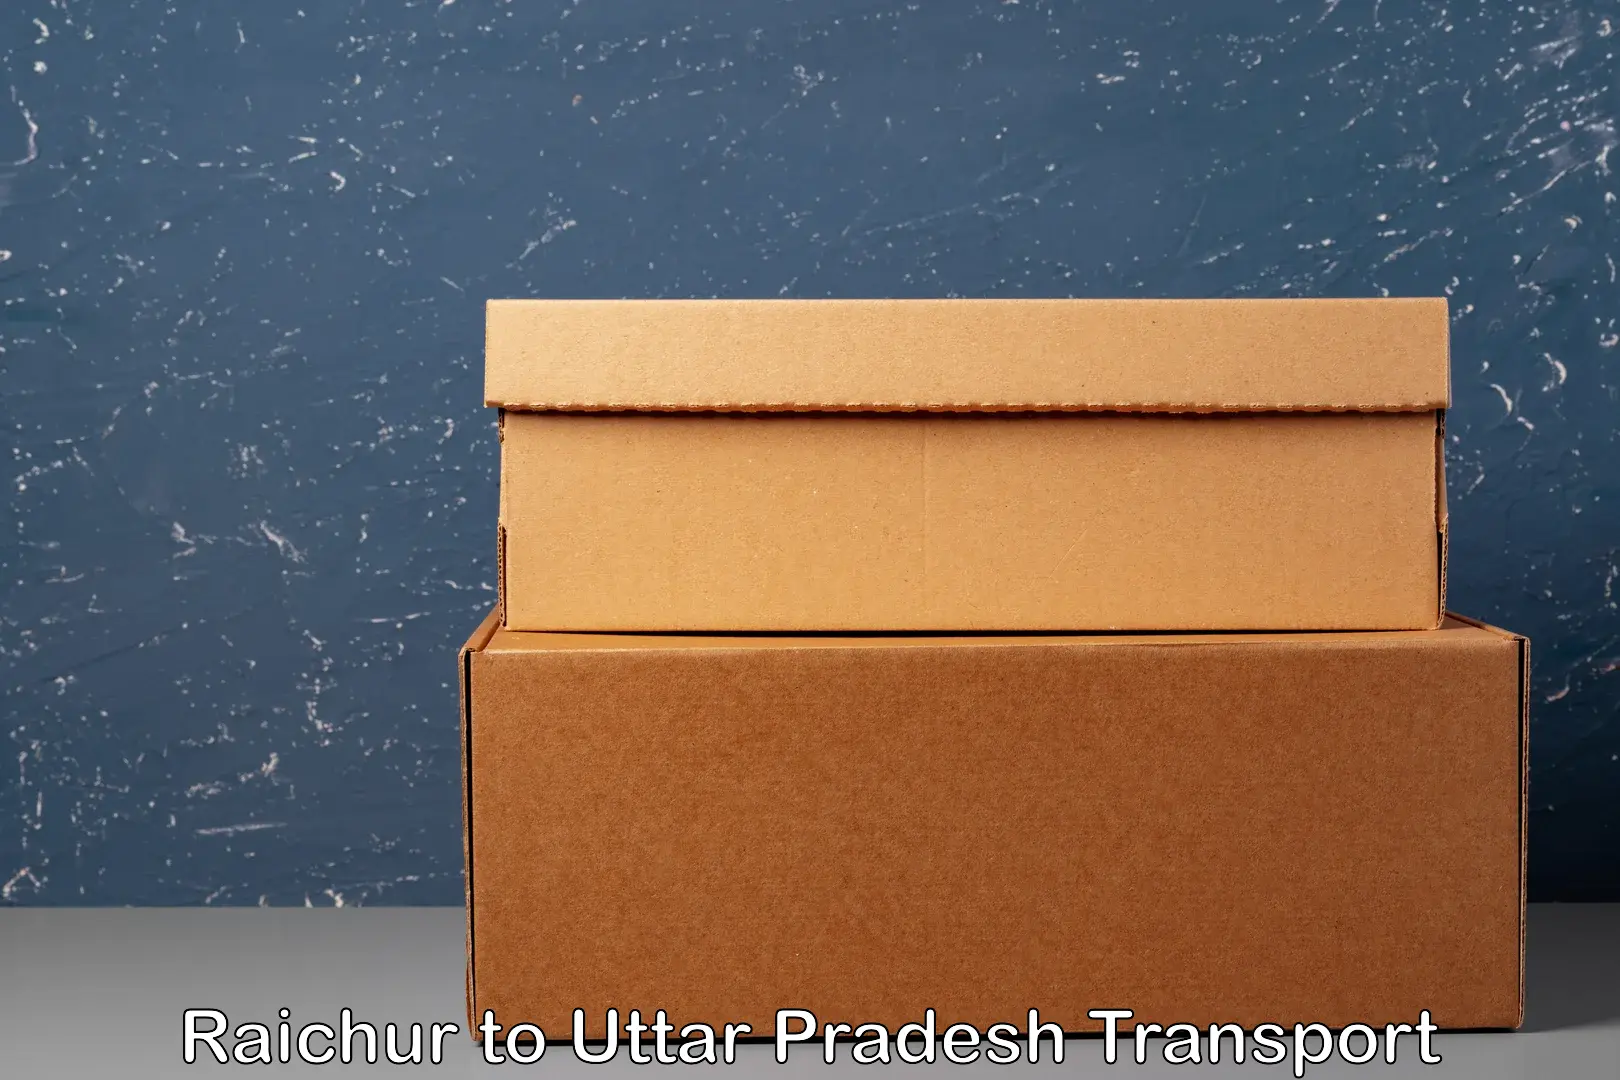 Shipping services Raichur to Noida